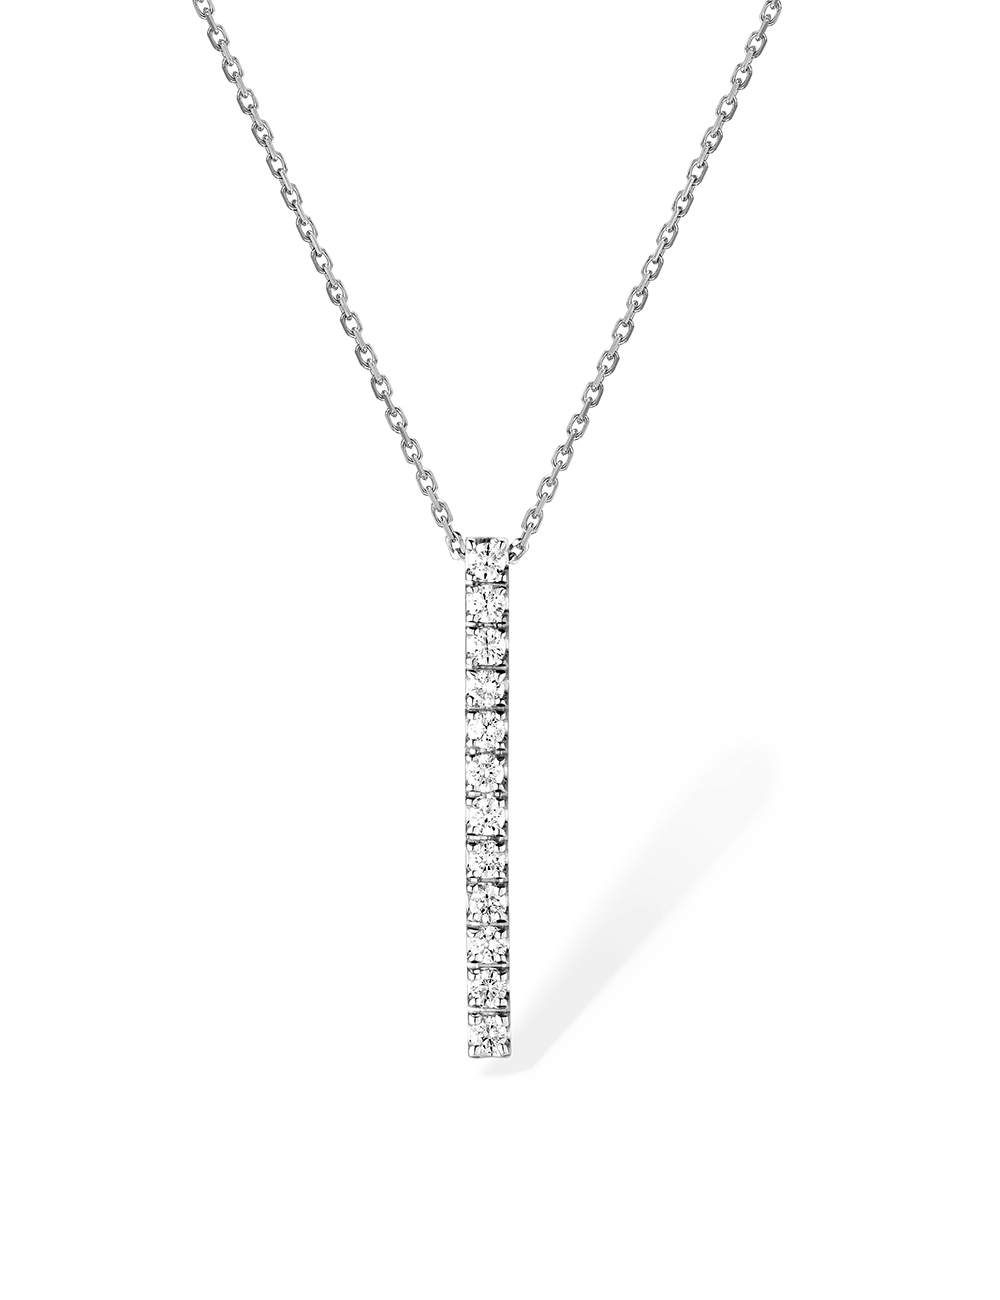 12 diamants, 12 éclats : Découvrez notre pendentif femme en or blanc serti d'une barrette de 12 diamants blancs